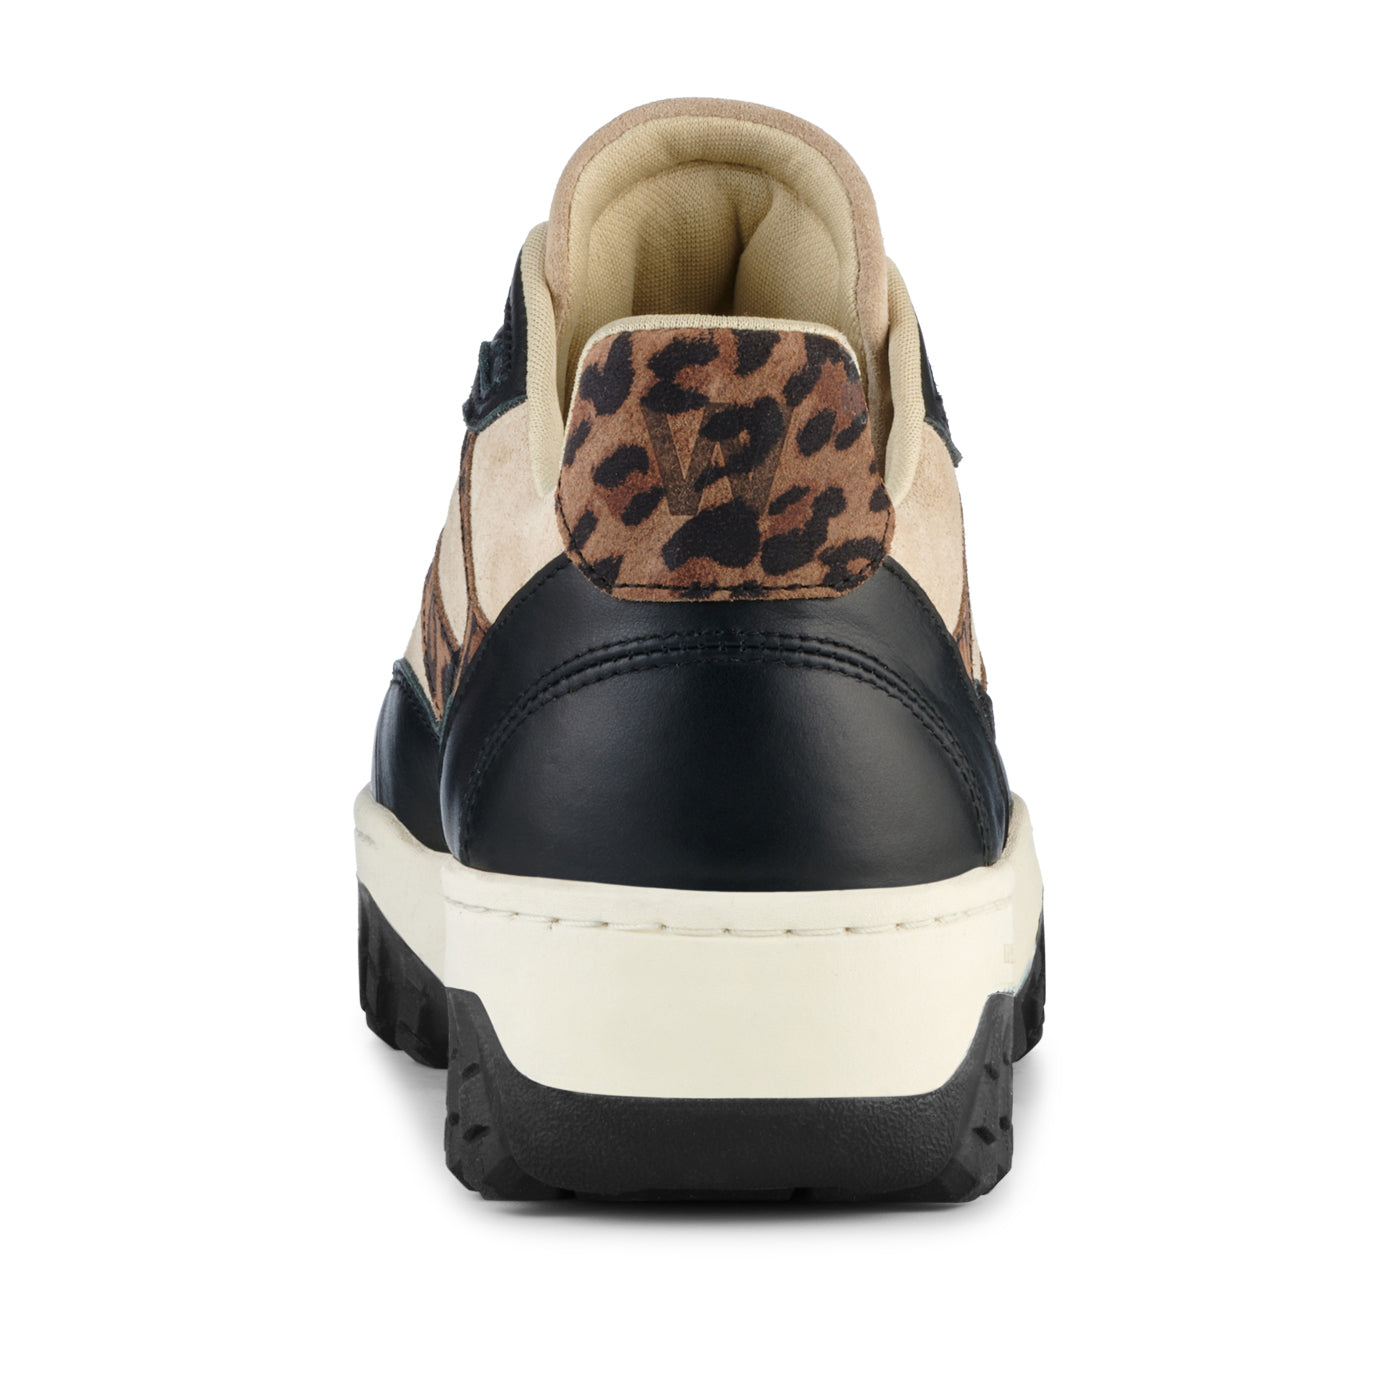 WODEN Ella Suede Sneakers 327 Leopard